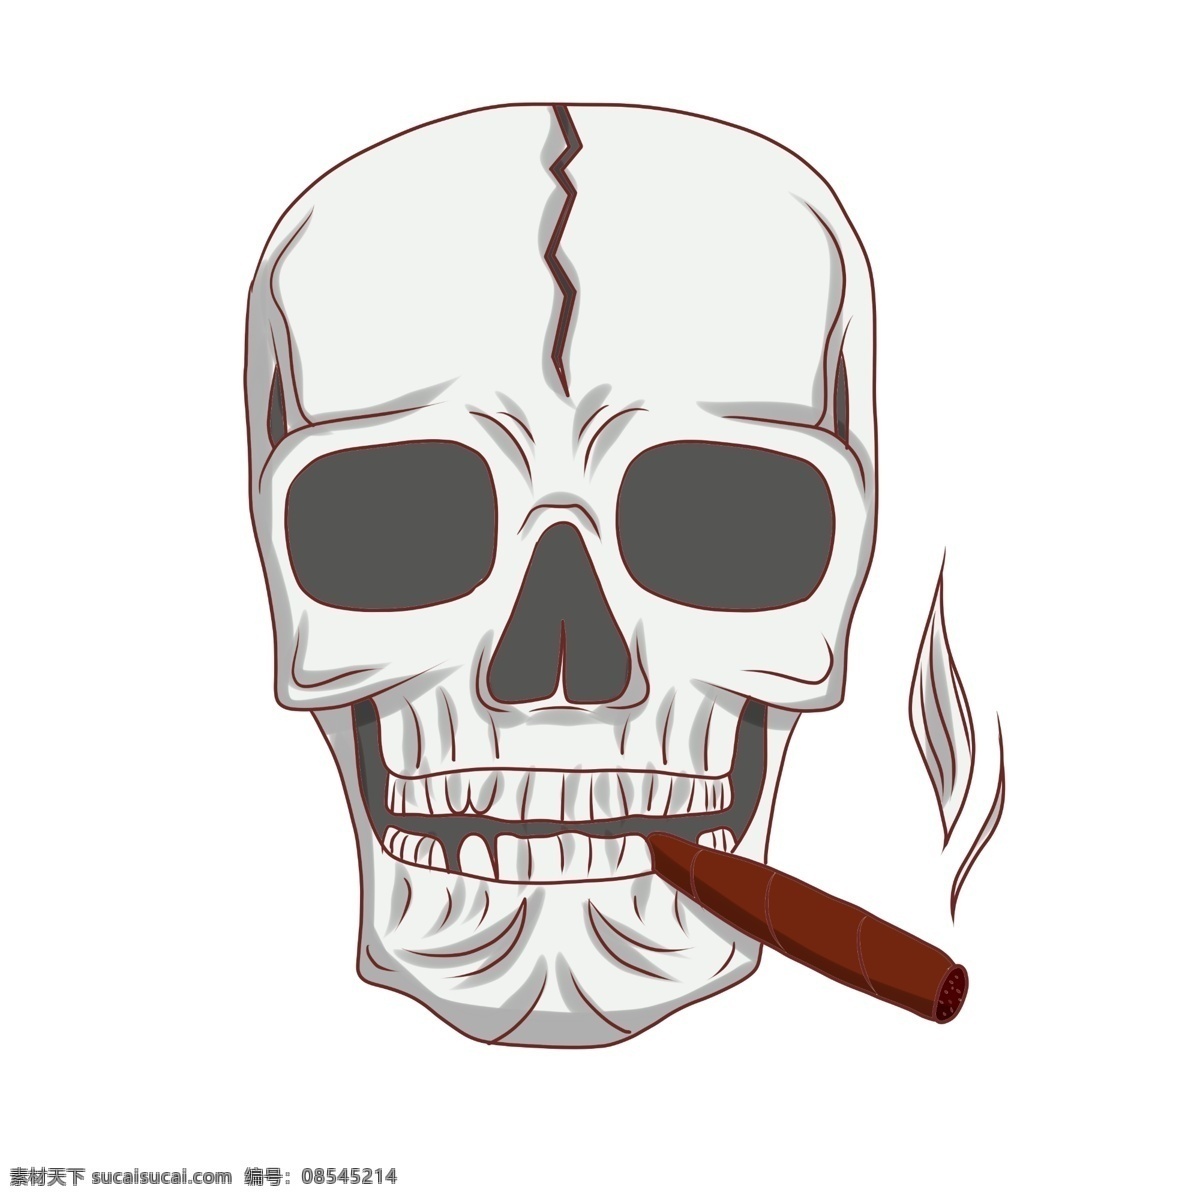 抽 雪茄 骷髅 插画 抽烟的骷髅 卡通骷髅插画 棕色的雪茄 骷髅插画 骷髅头 创意骷髅插画 抽雪茄